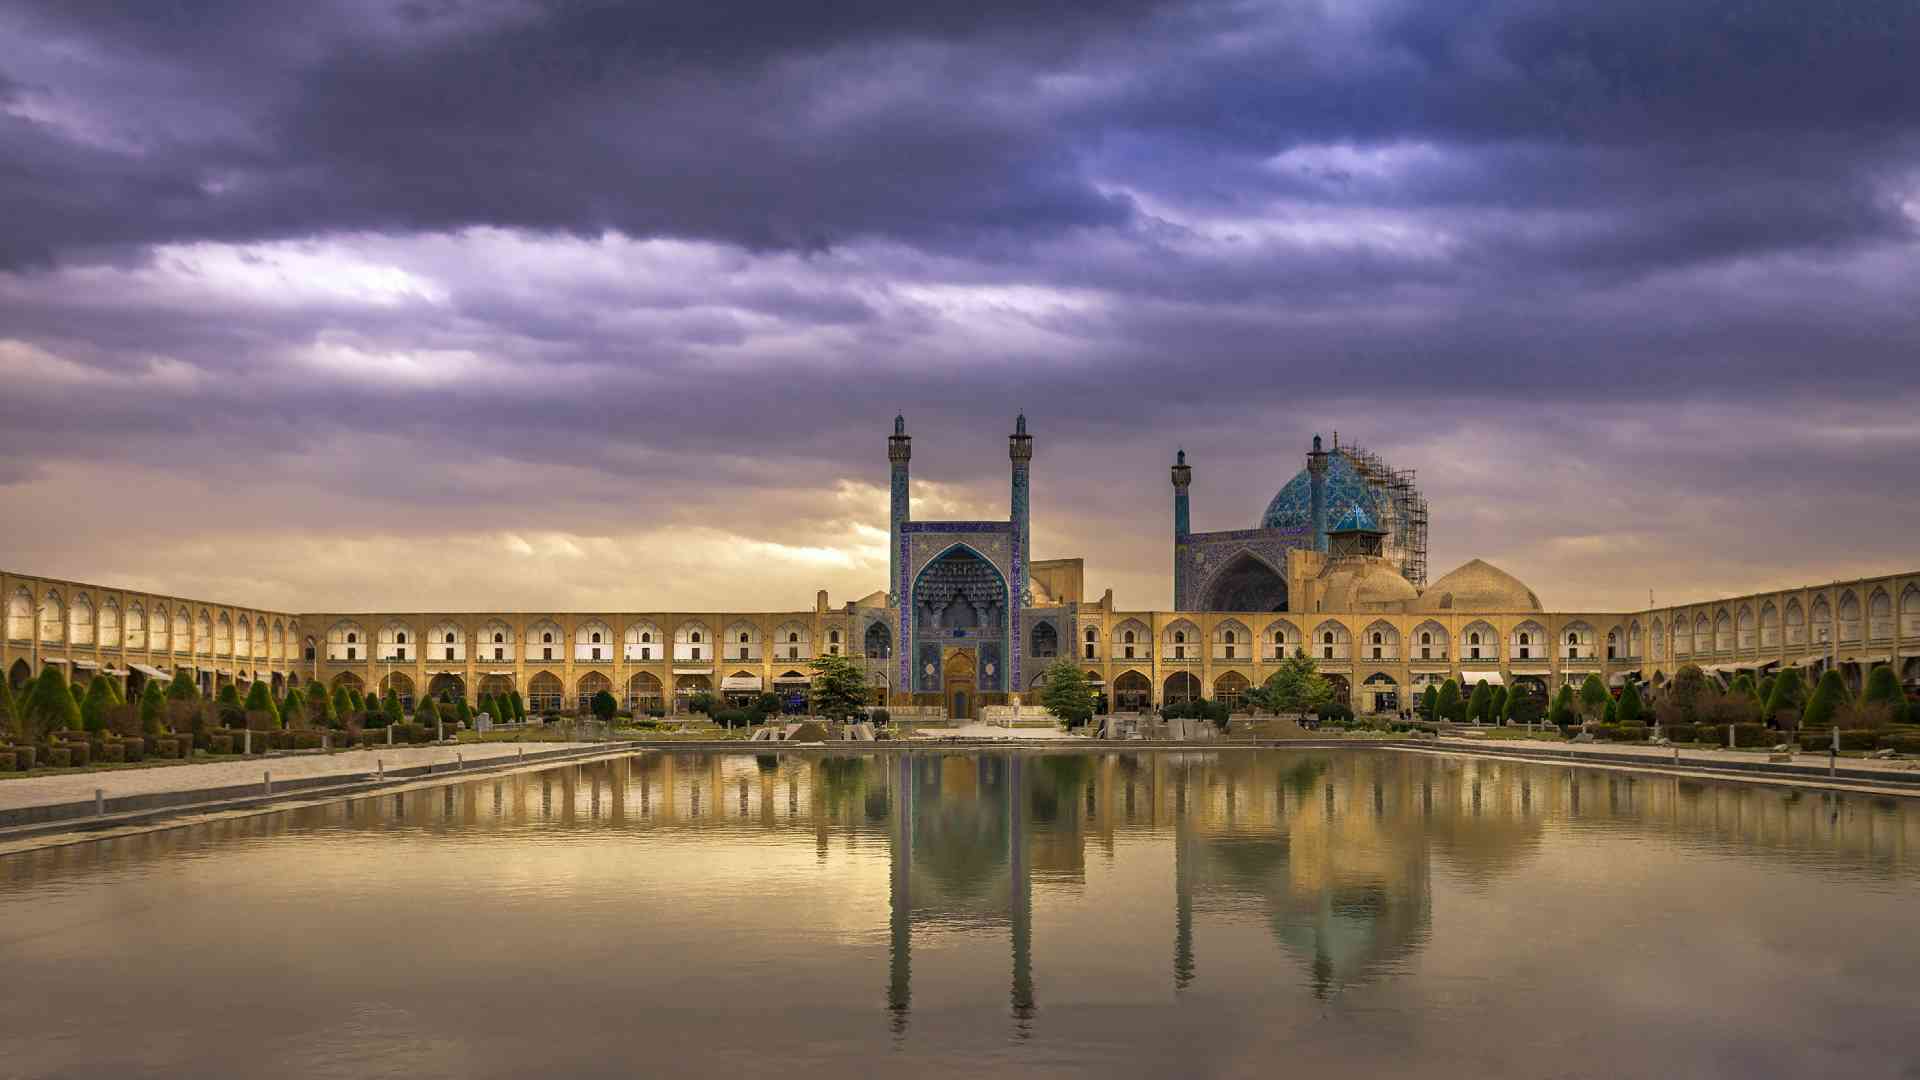 عکس مسجد امام اصفهان در شب